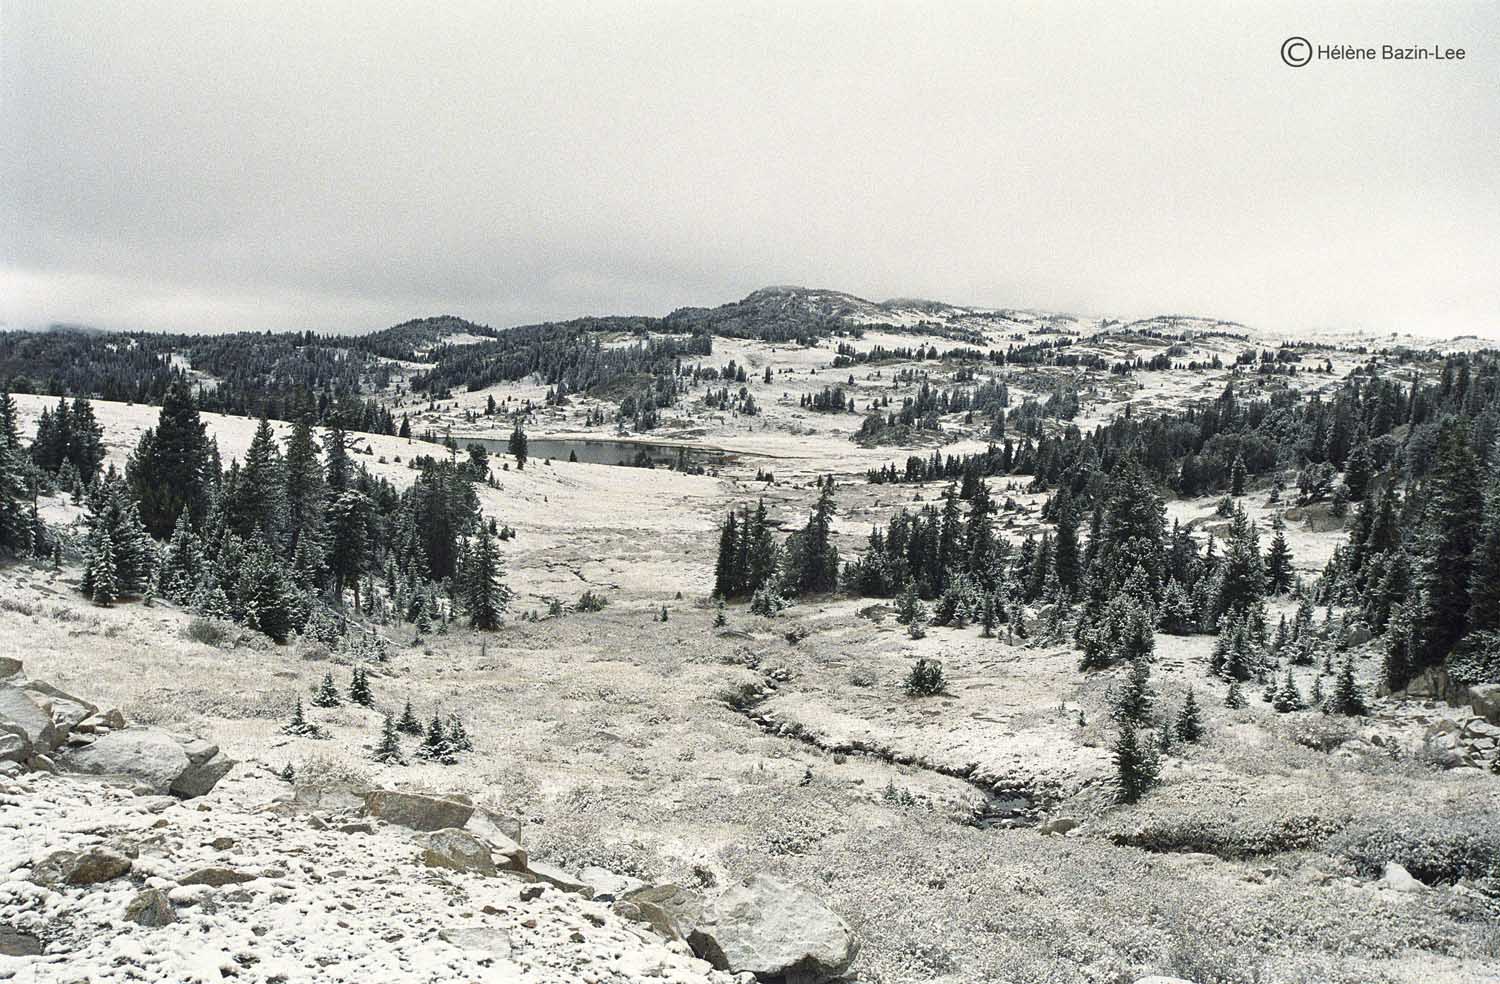 Beartooth Plateau